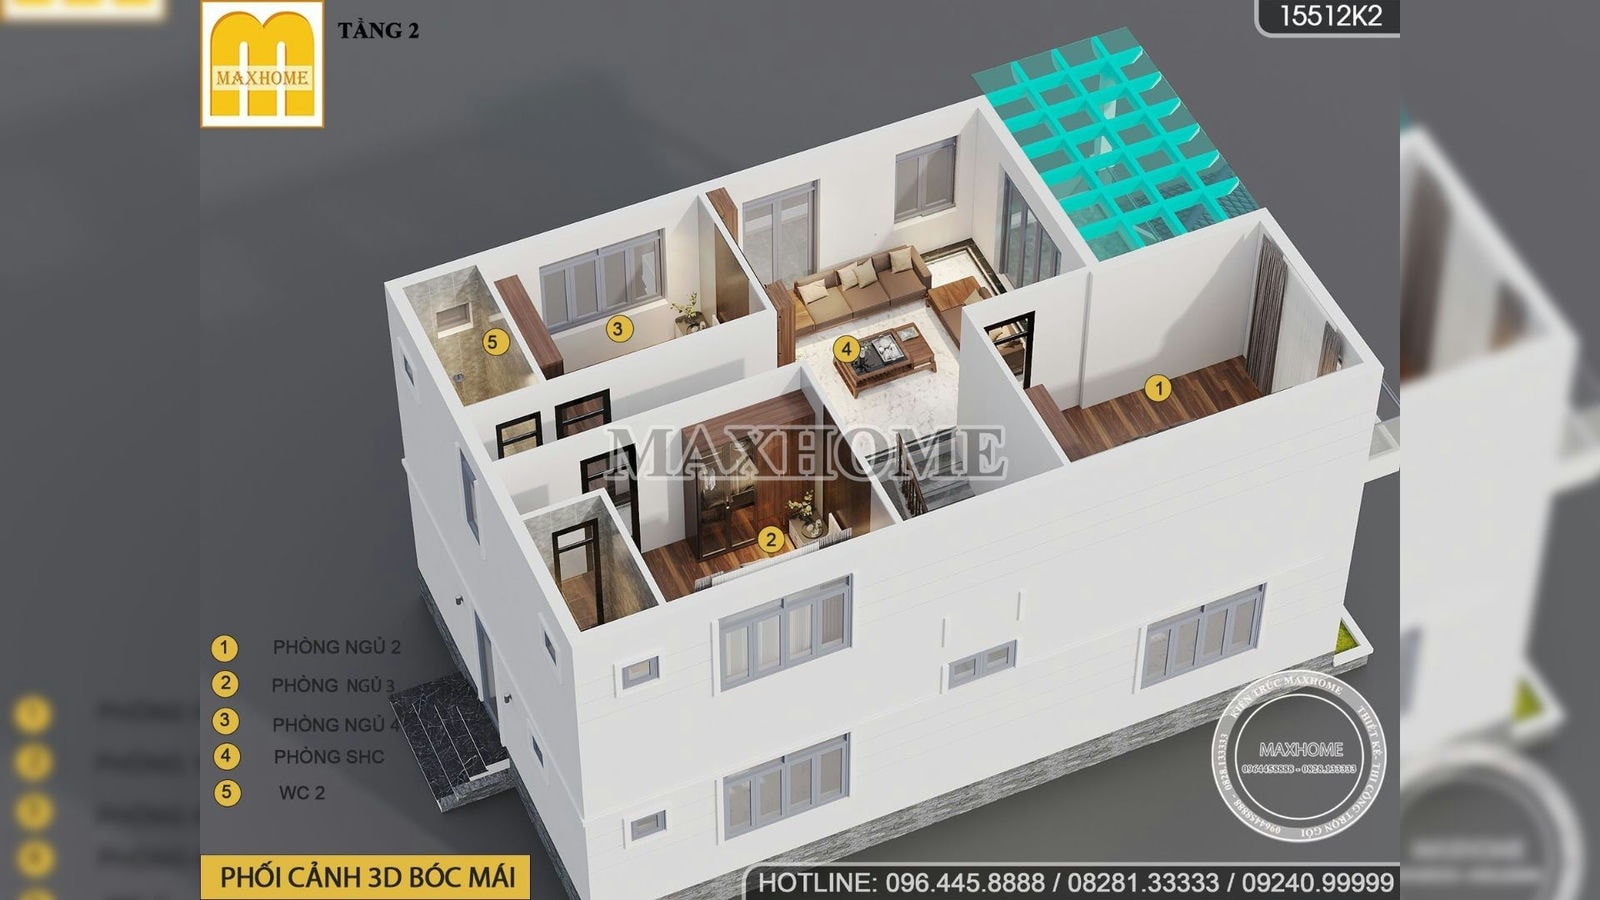 Nhà 2 tầng thiết kế hiện đại công năng 4 phòng ngủ siêu đẹp | MH01824